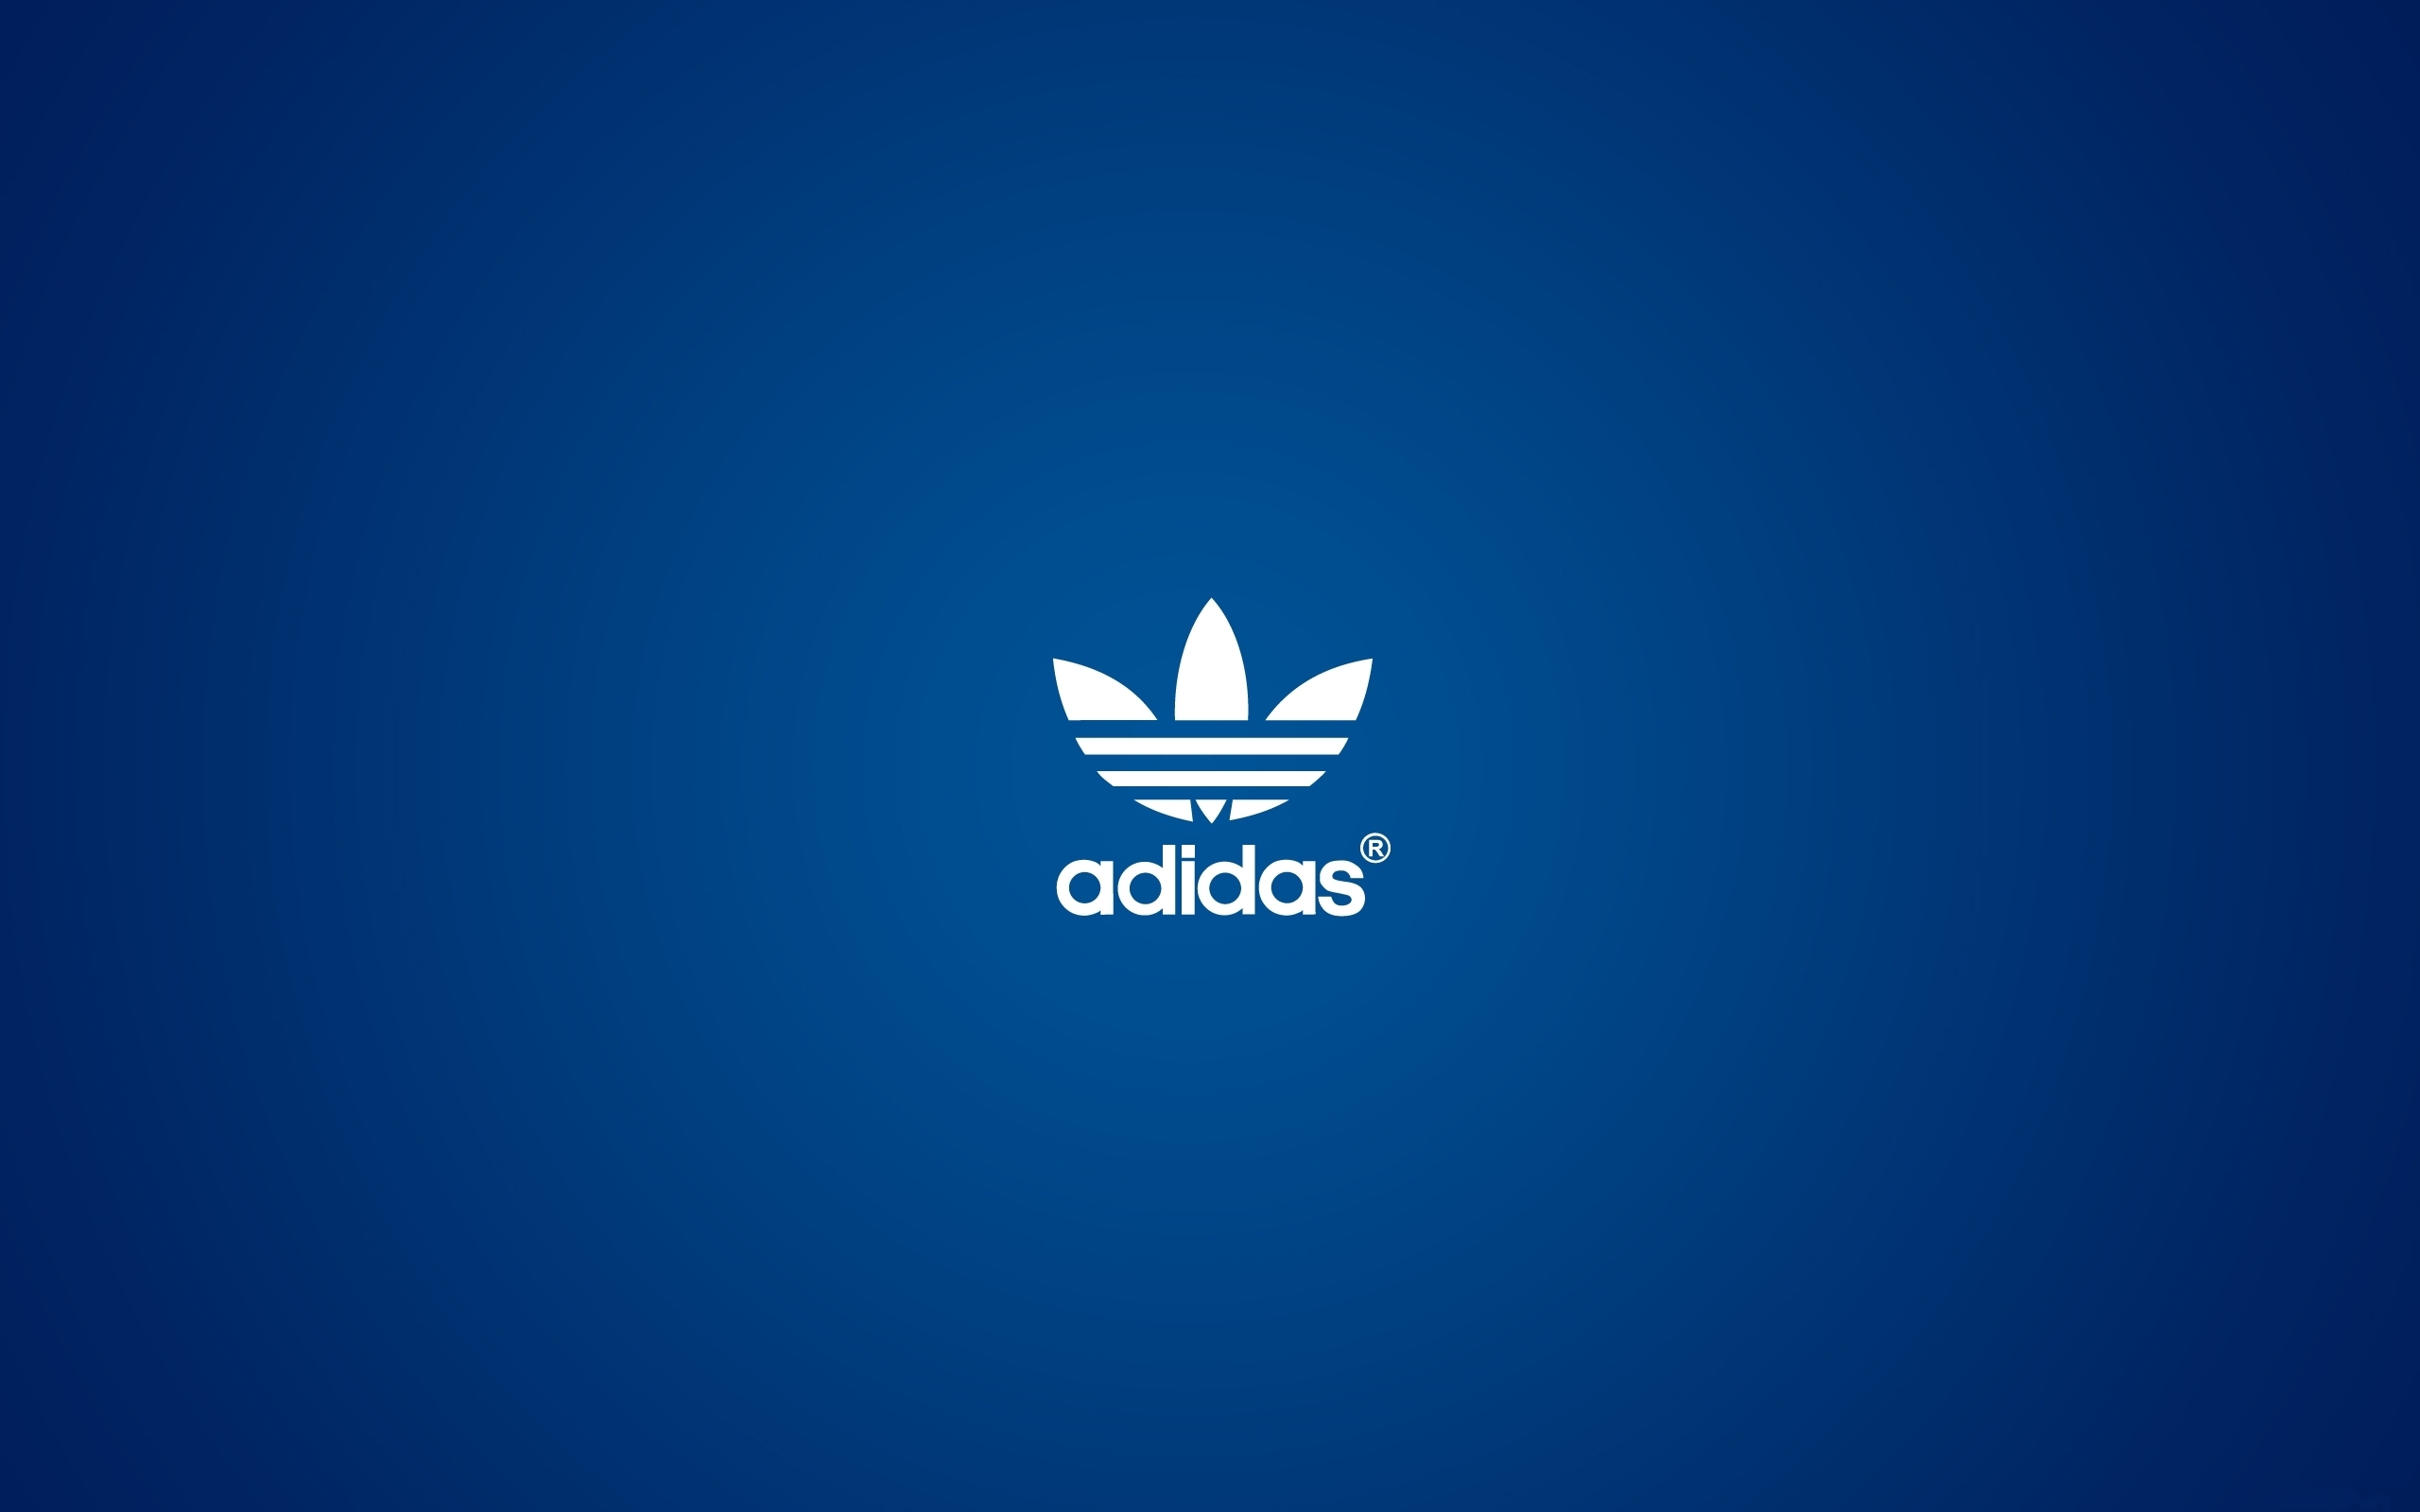 adidas wallpaper hd,logo,blue,font,azure,brand